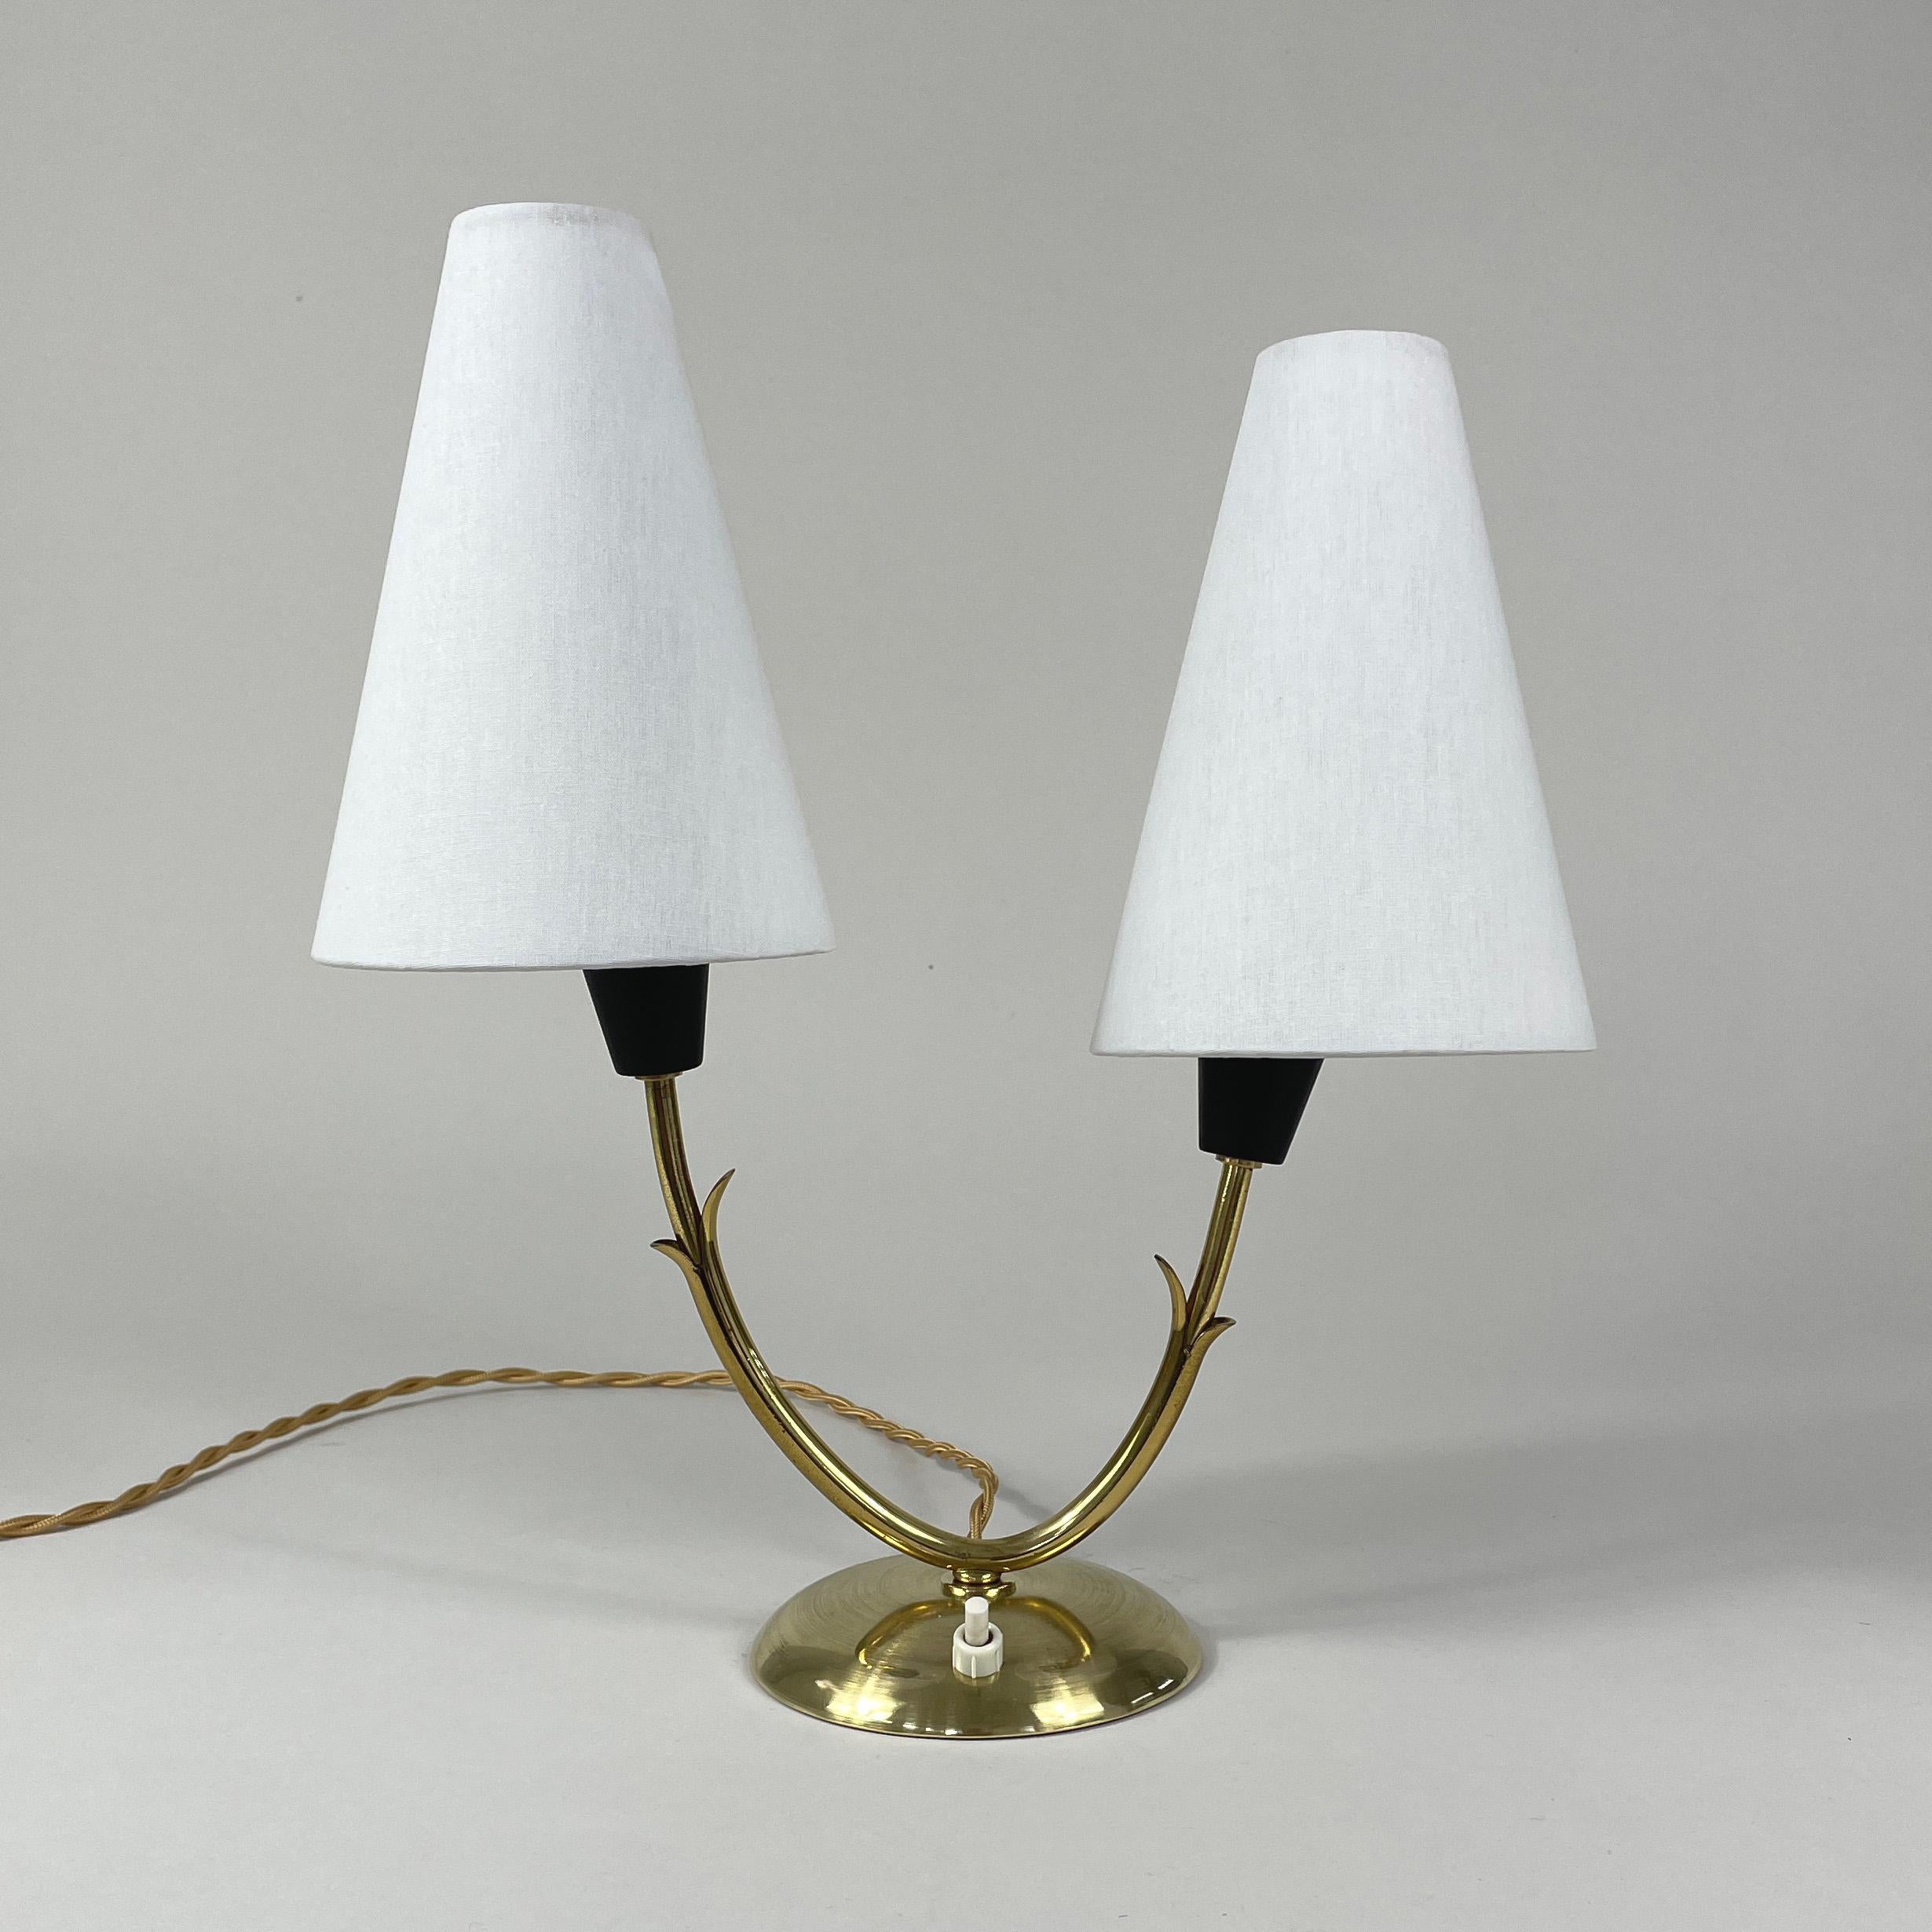 Cette lampe de table inhabituelle à double bras a été conçue et fabriquée en Suède dans les années 1950. Elle se compose d'une base en laiton et d'un abat-jour en lin blanc cassé à clipser. Les abat-jour peuvent être déplacés dans différentes